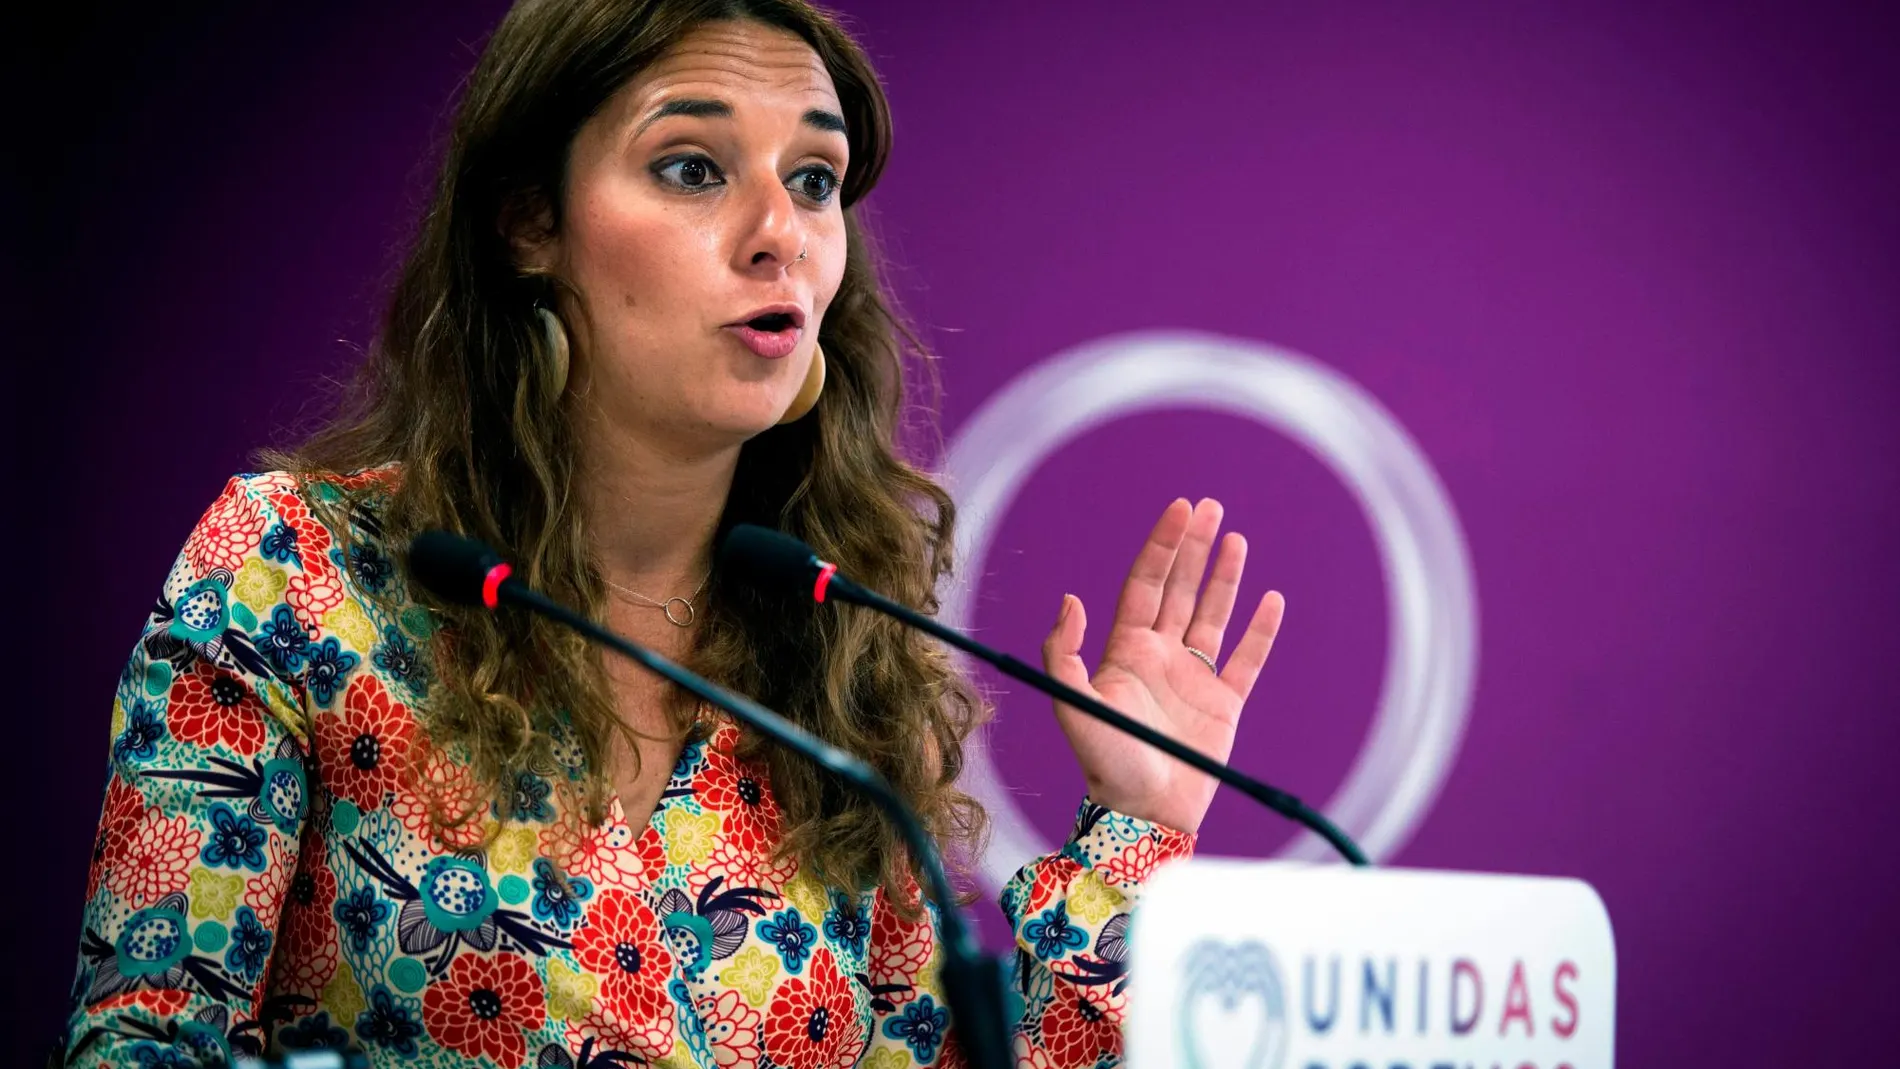 La portavoz de Podemos Noelia Vera, durante la rueda de prensa esta mañana en Madrid.- EFE/Luca Piergiovanni